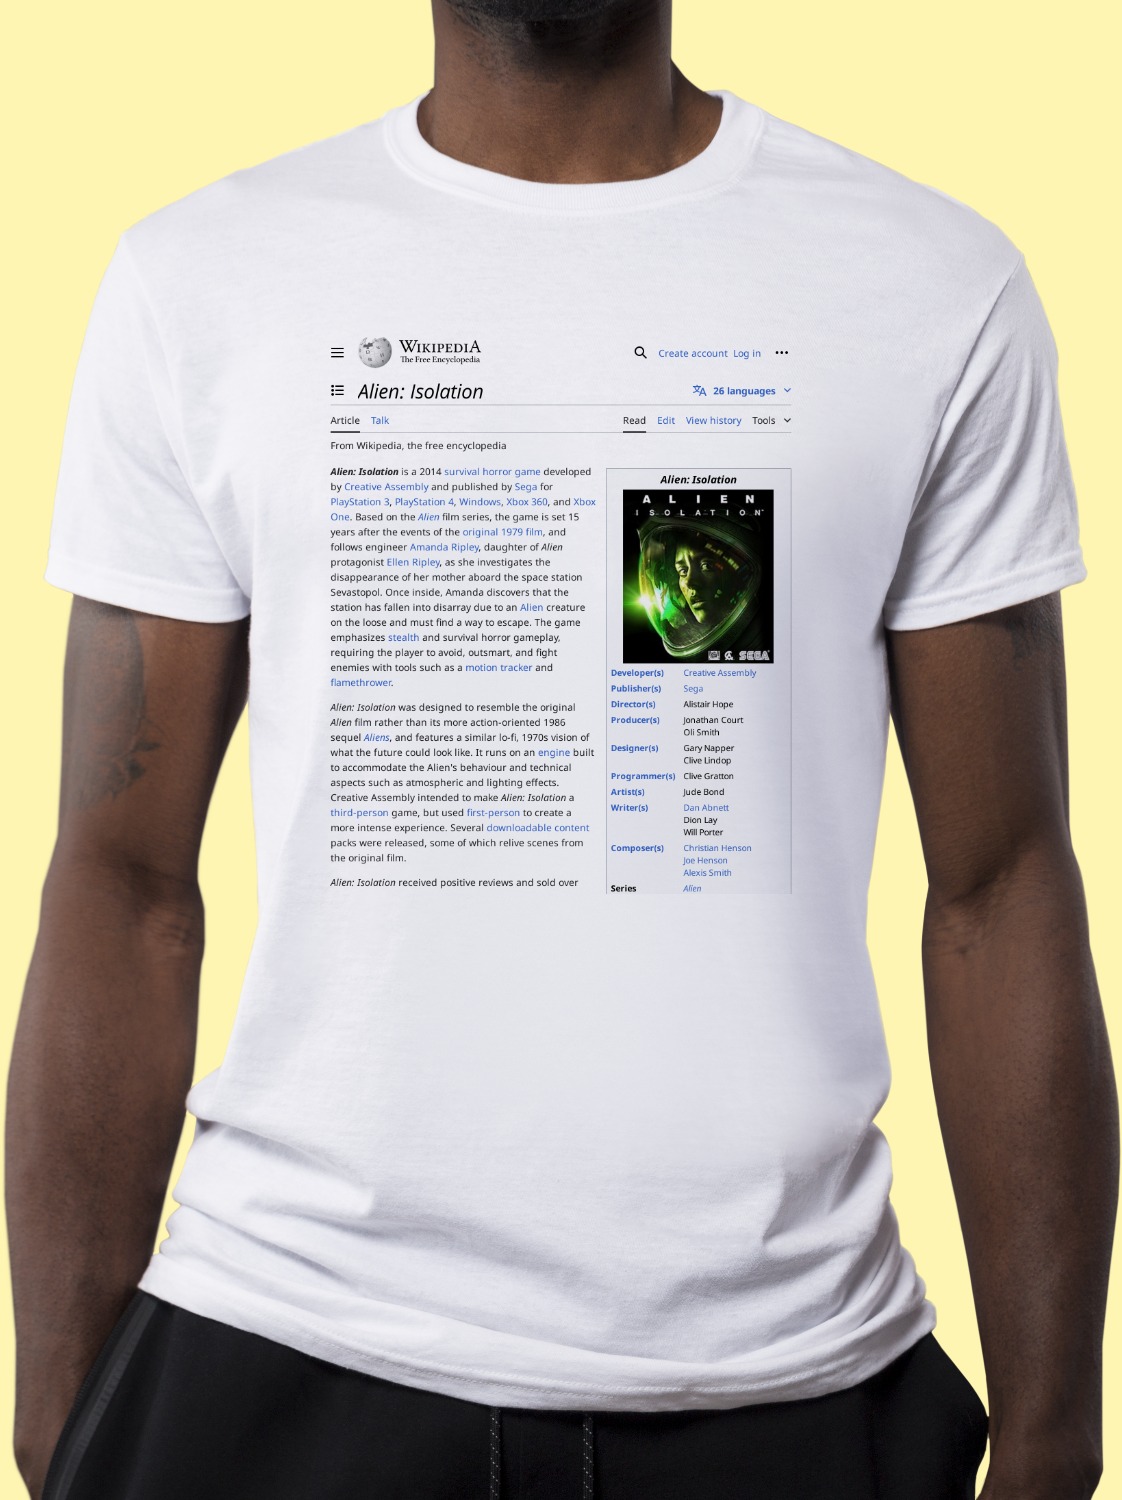 Alien:_Isolation Wikipedia Shirt